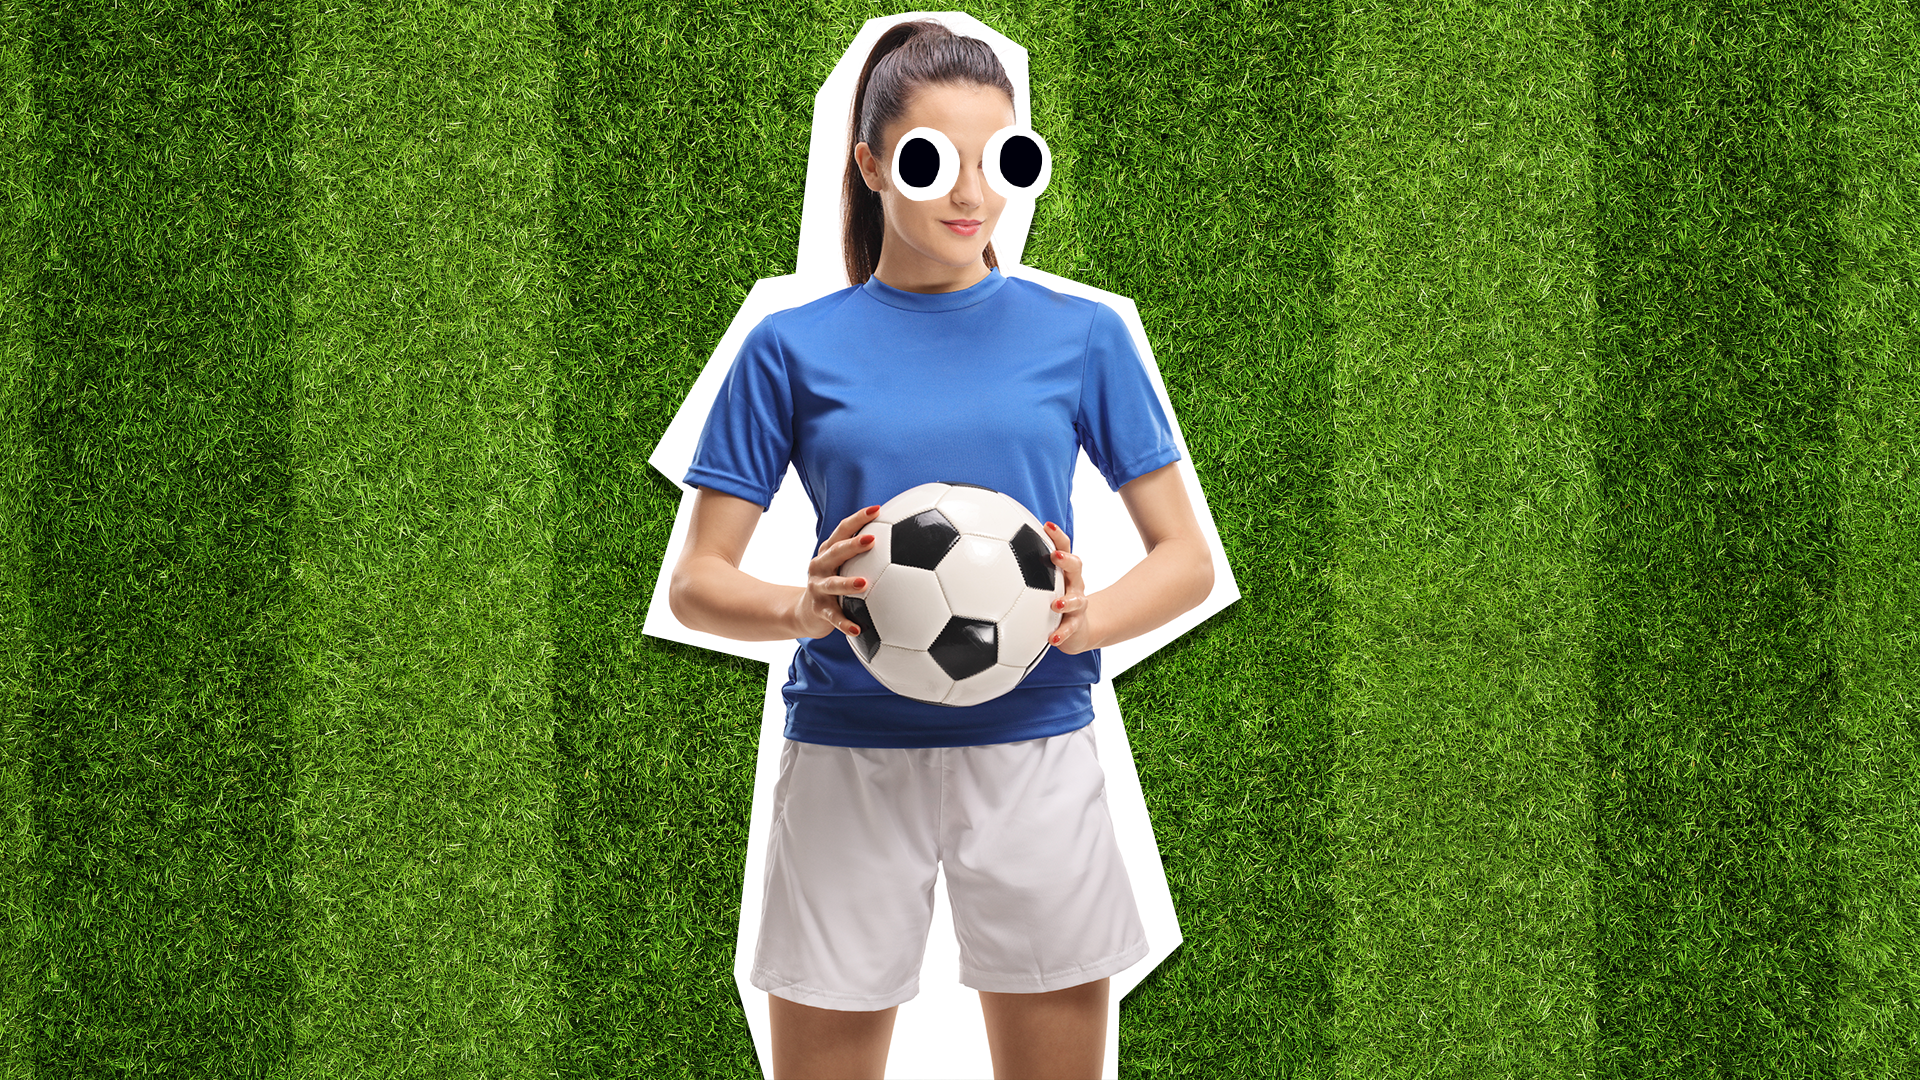 Female footballer on grass background